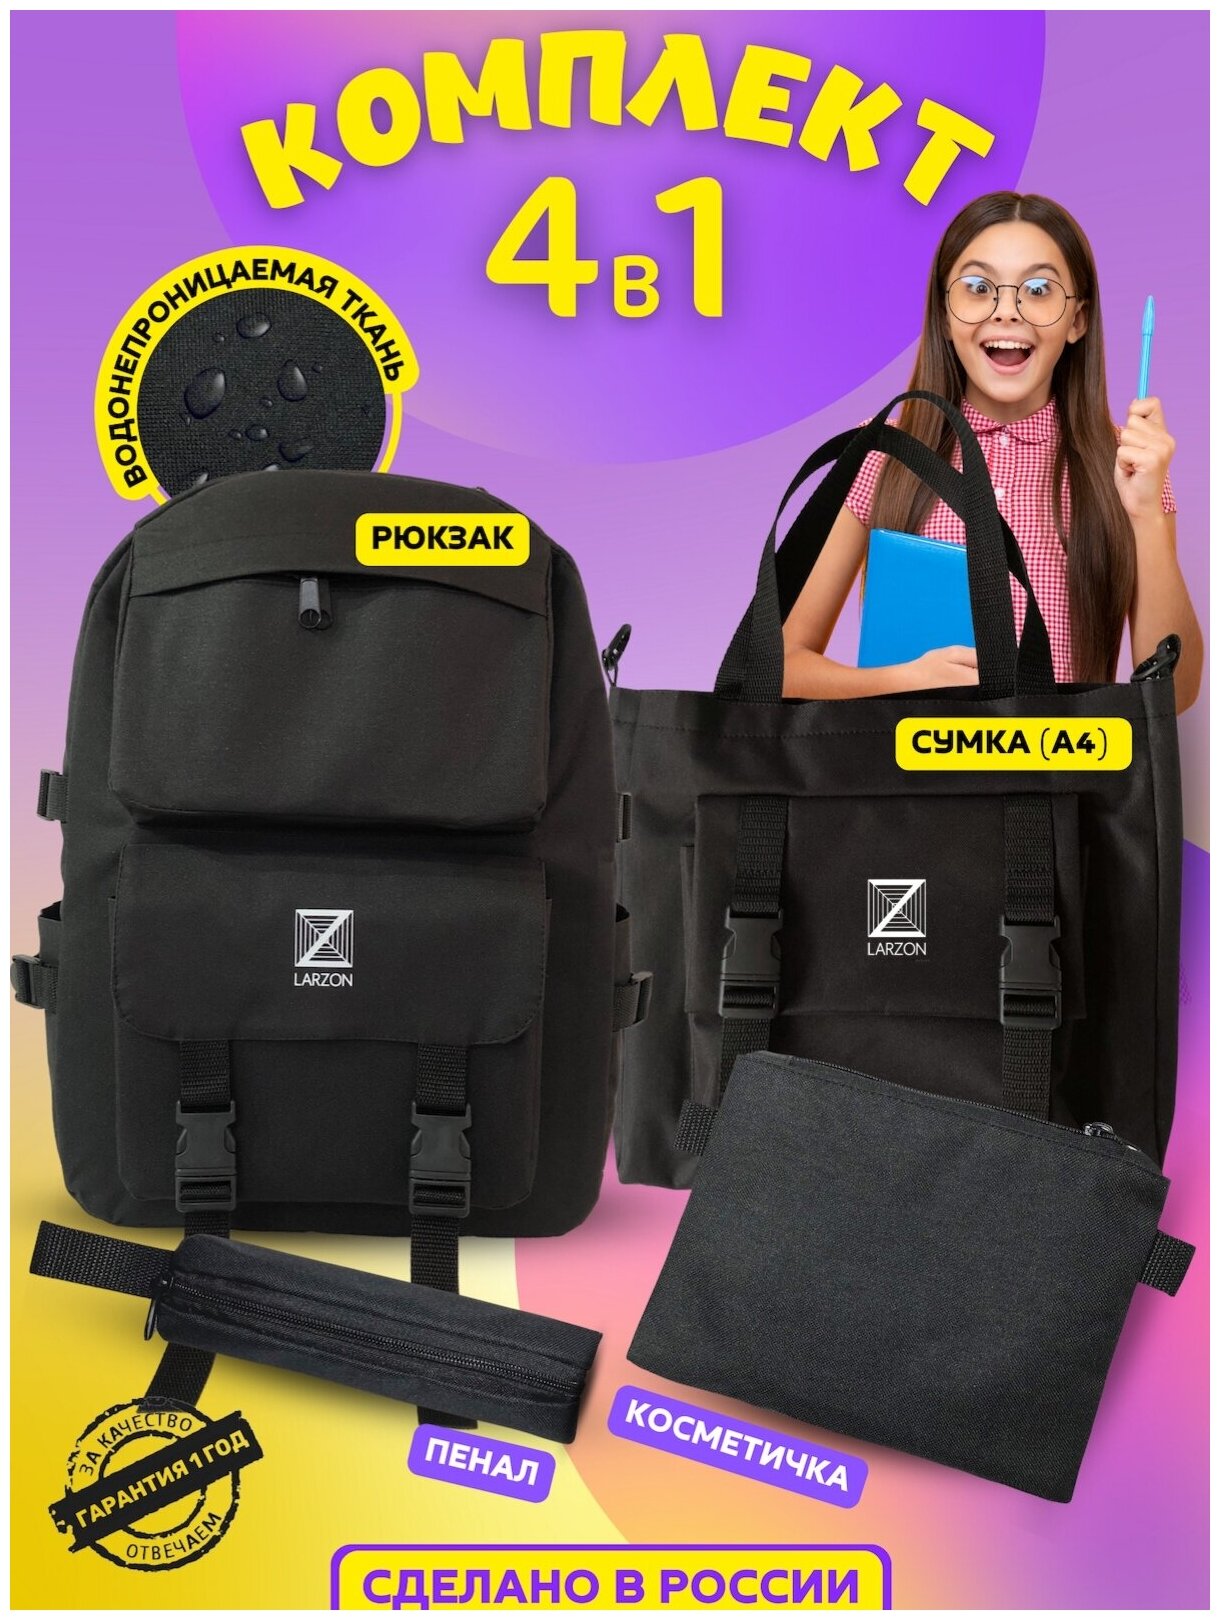 Рюкзак городской женский, детский, комплект 4 в 1: рюкзак ранец школьный, сумка шоппер, косметичка, пенал + подарок брелок и значки